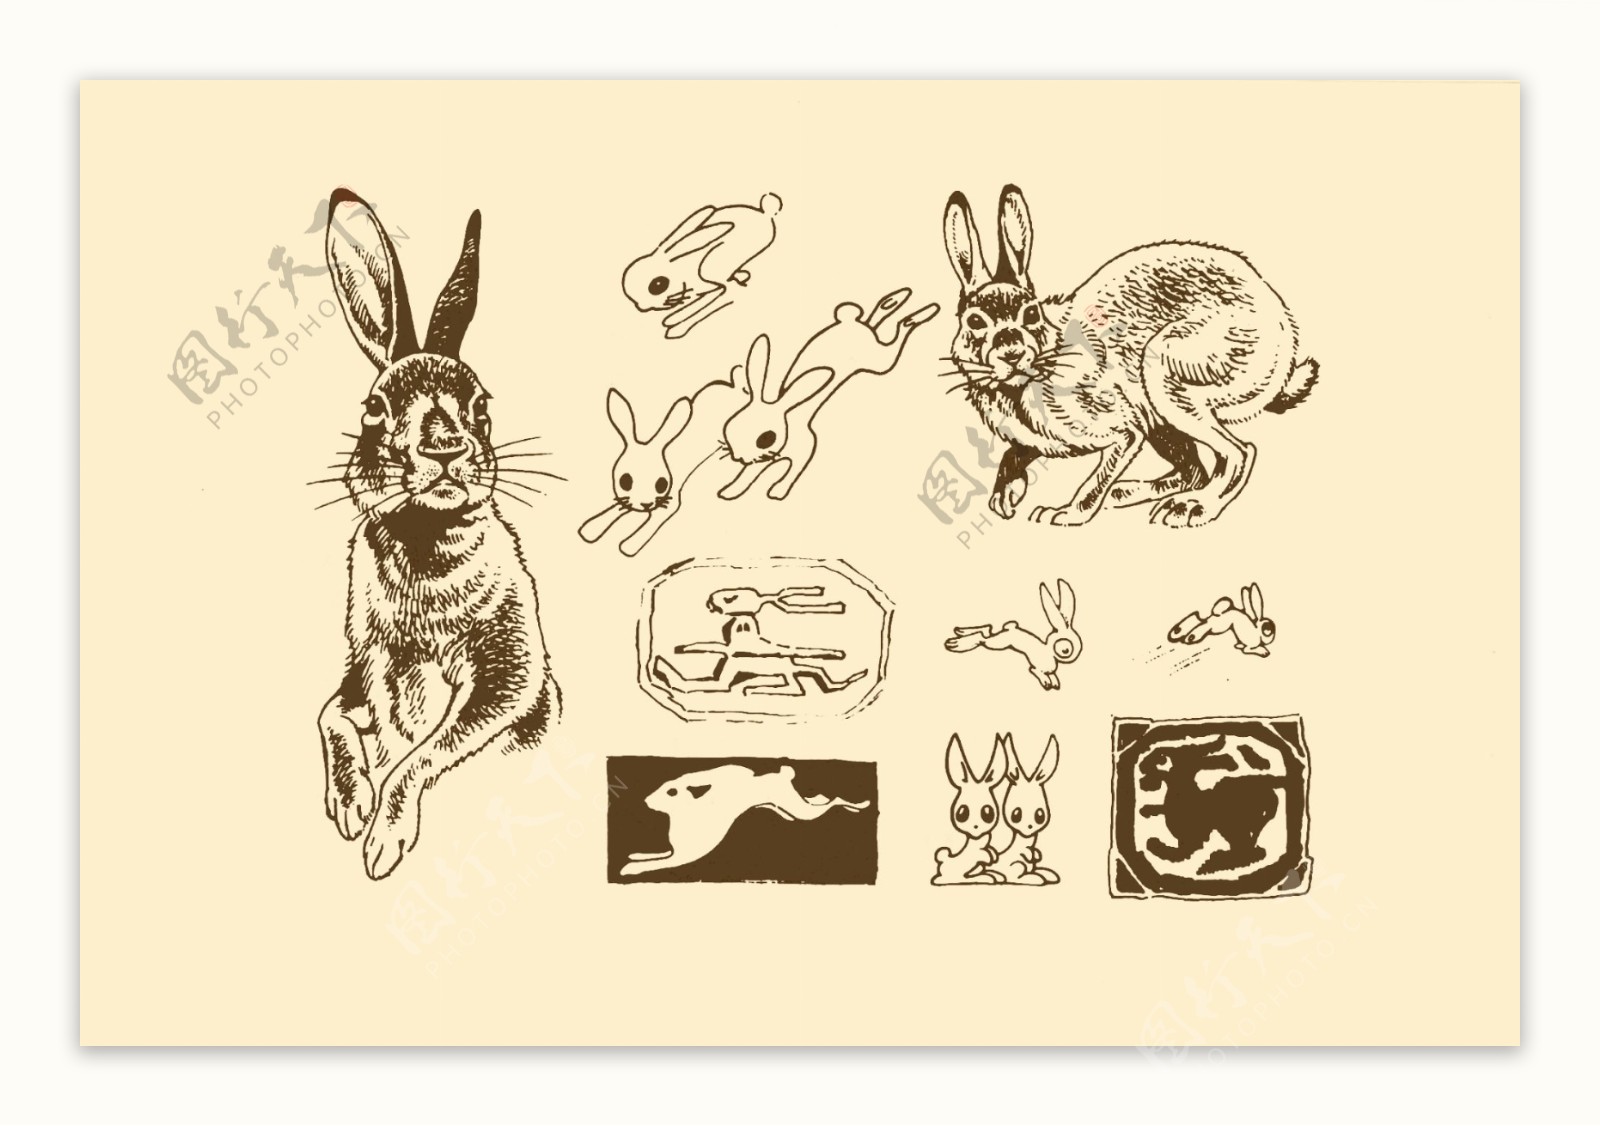 动物图案兔子图片